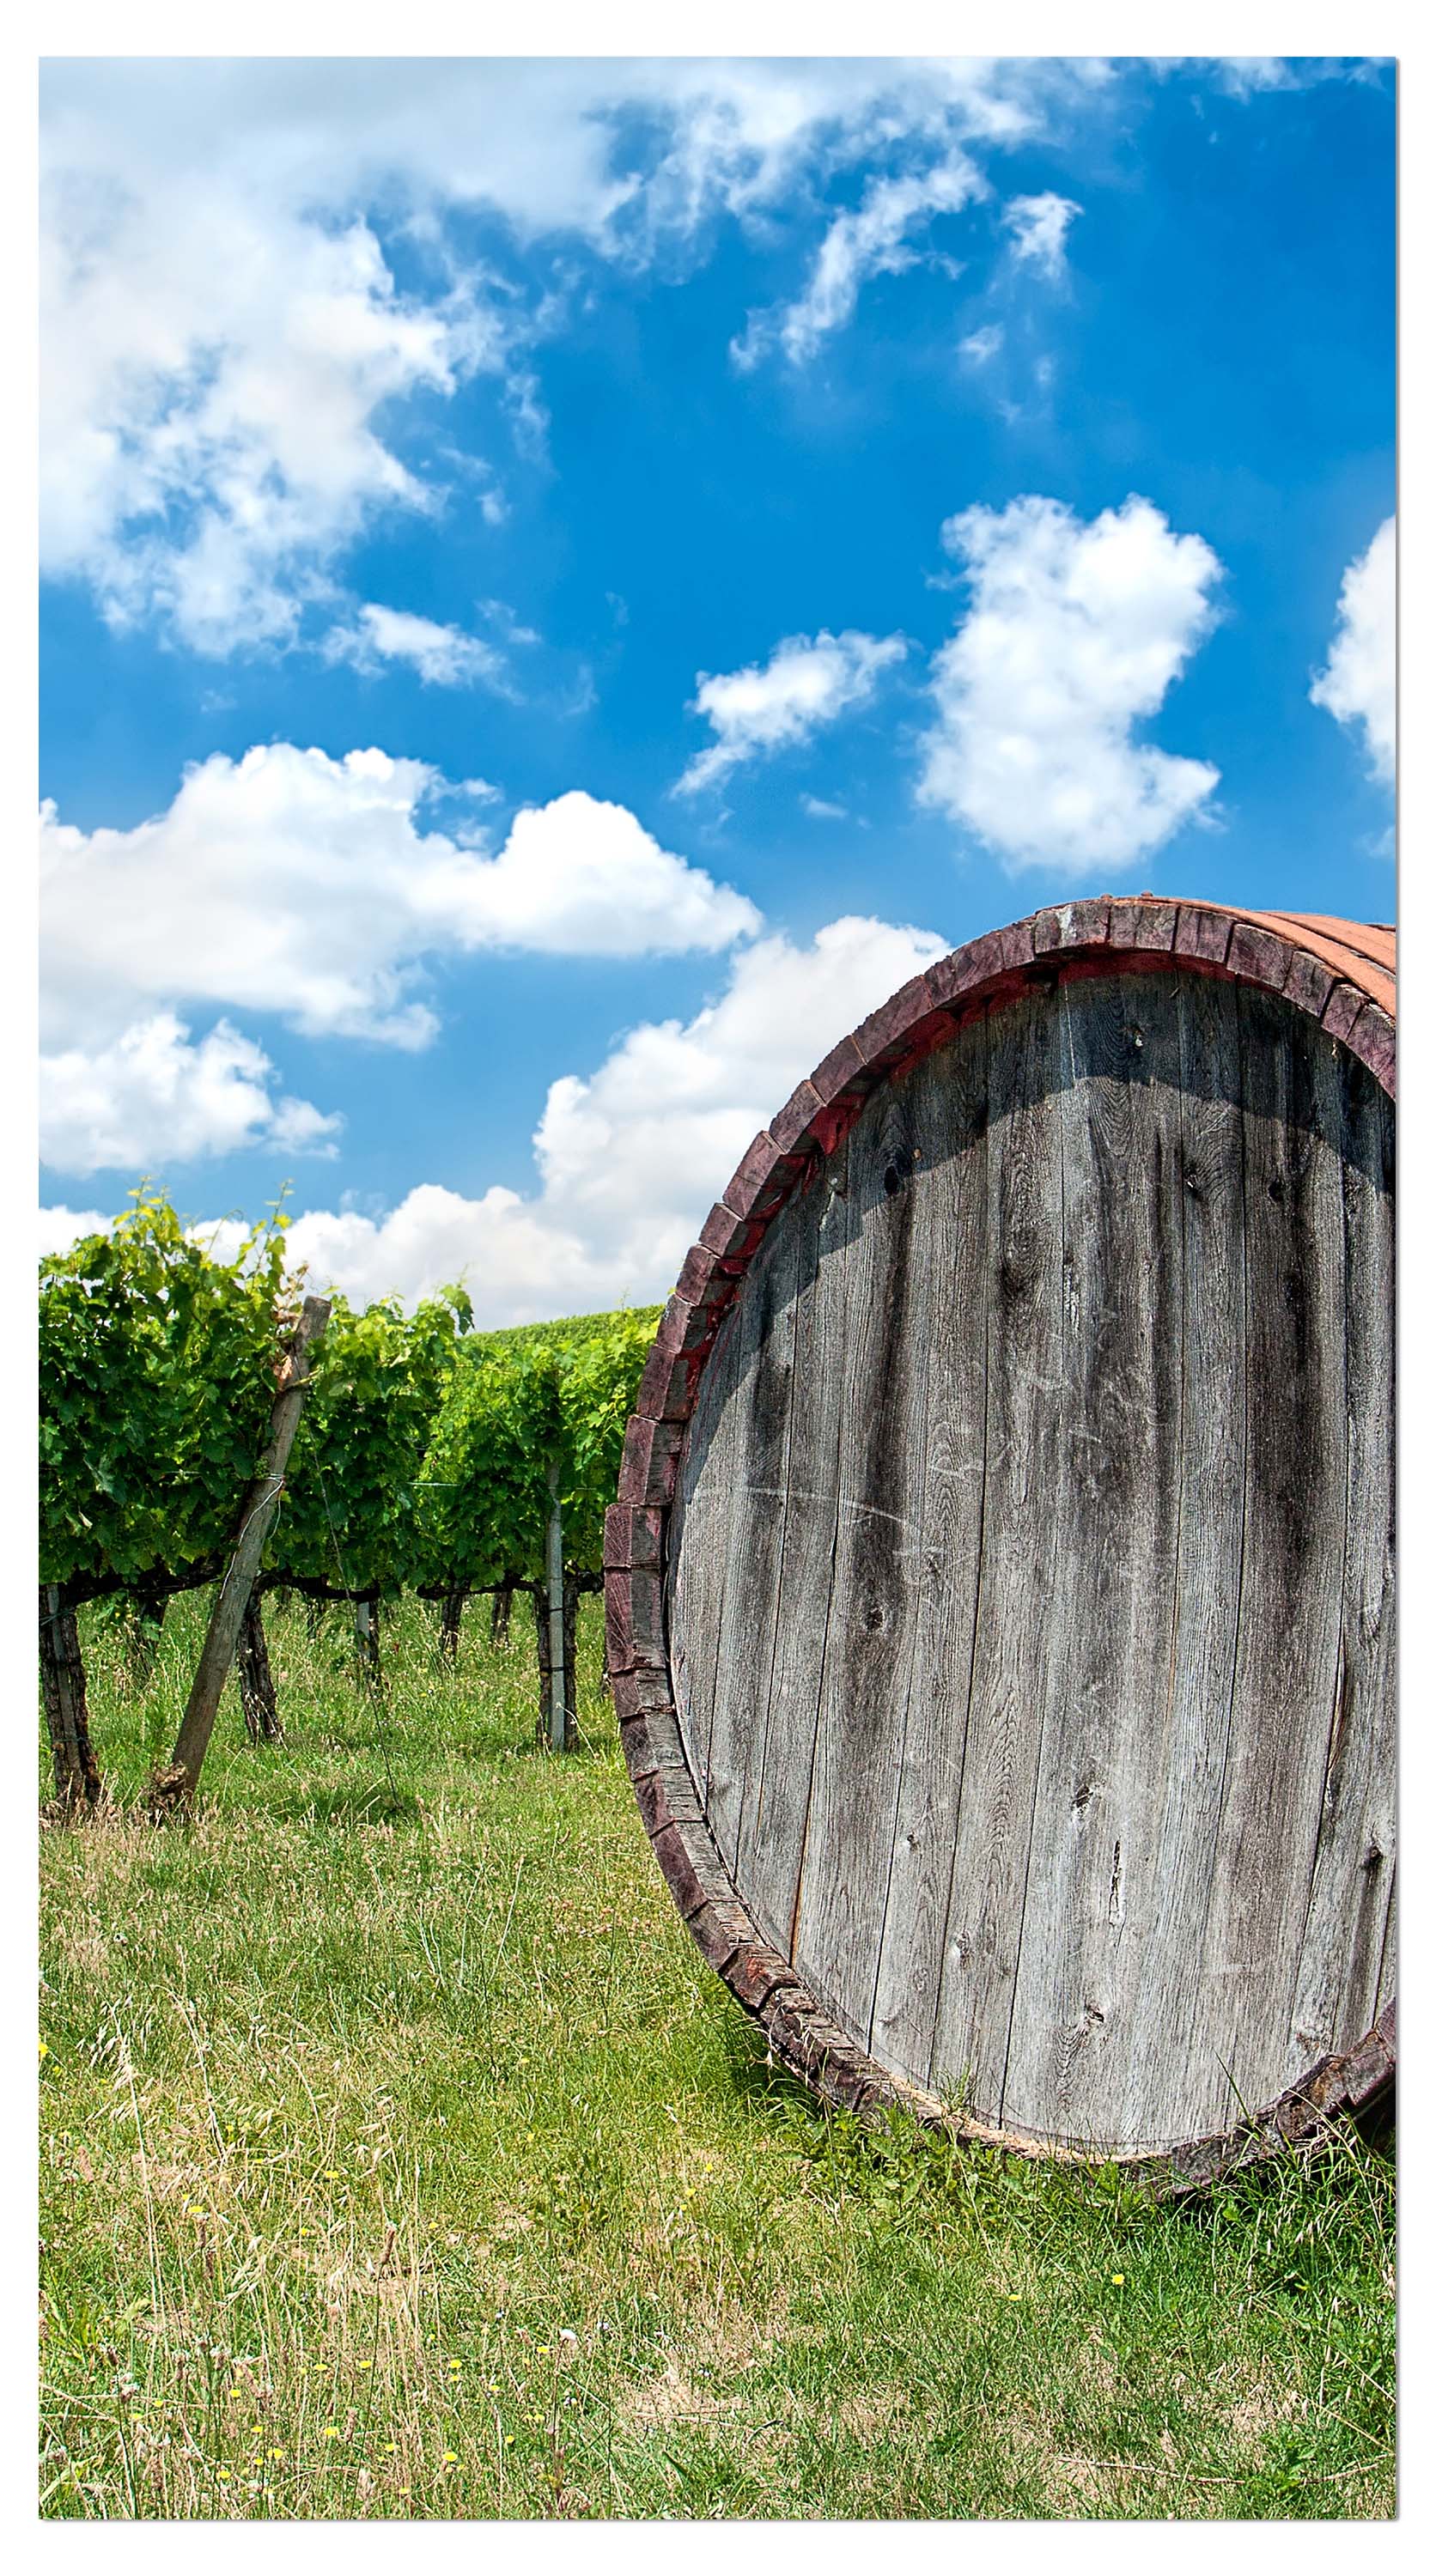 Garderobe Weinfass in der Toskana M0873 entdecken - Bild 4